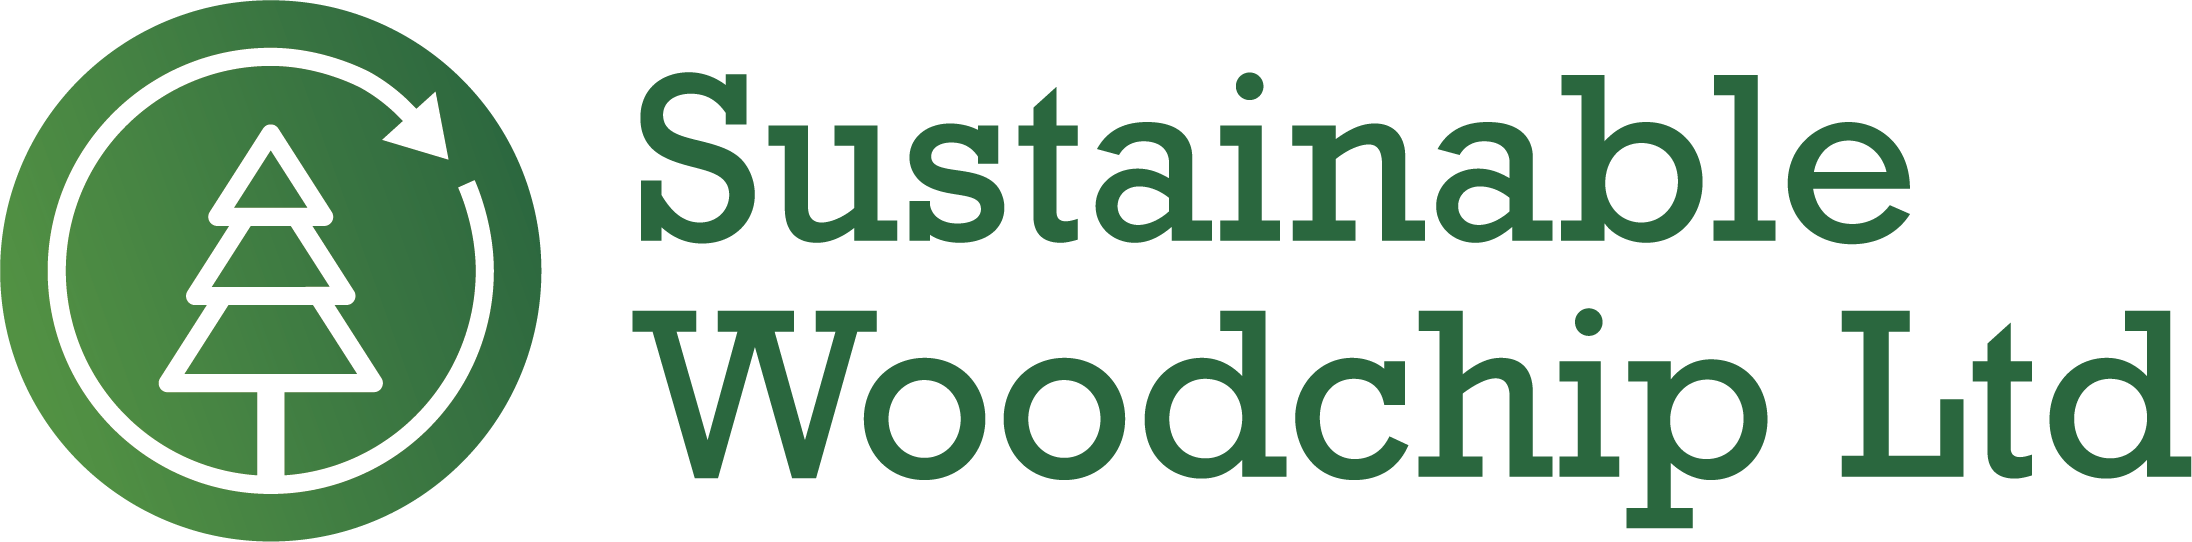 Sustainable Woodchip ltd